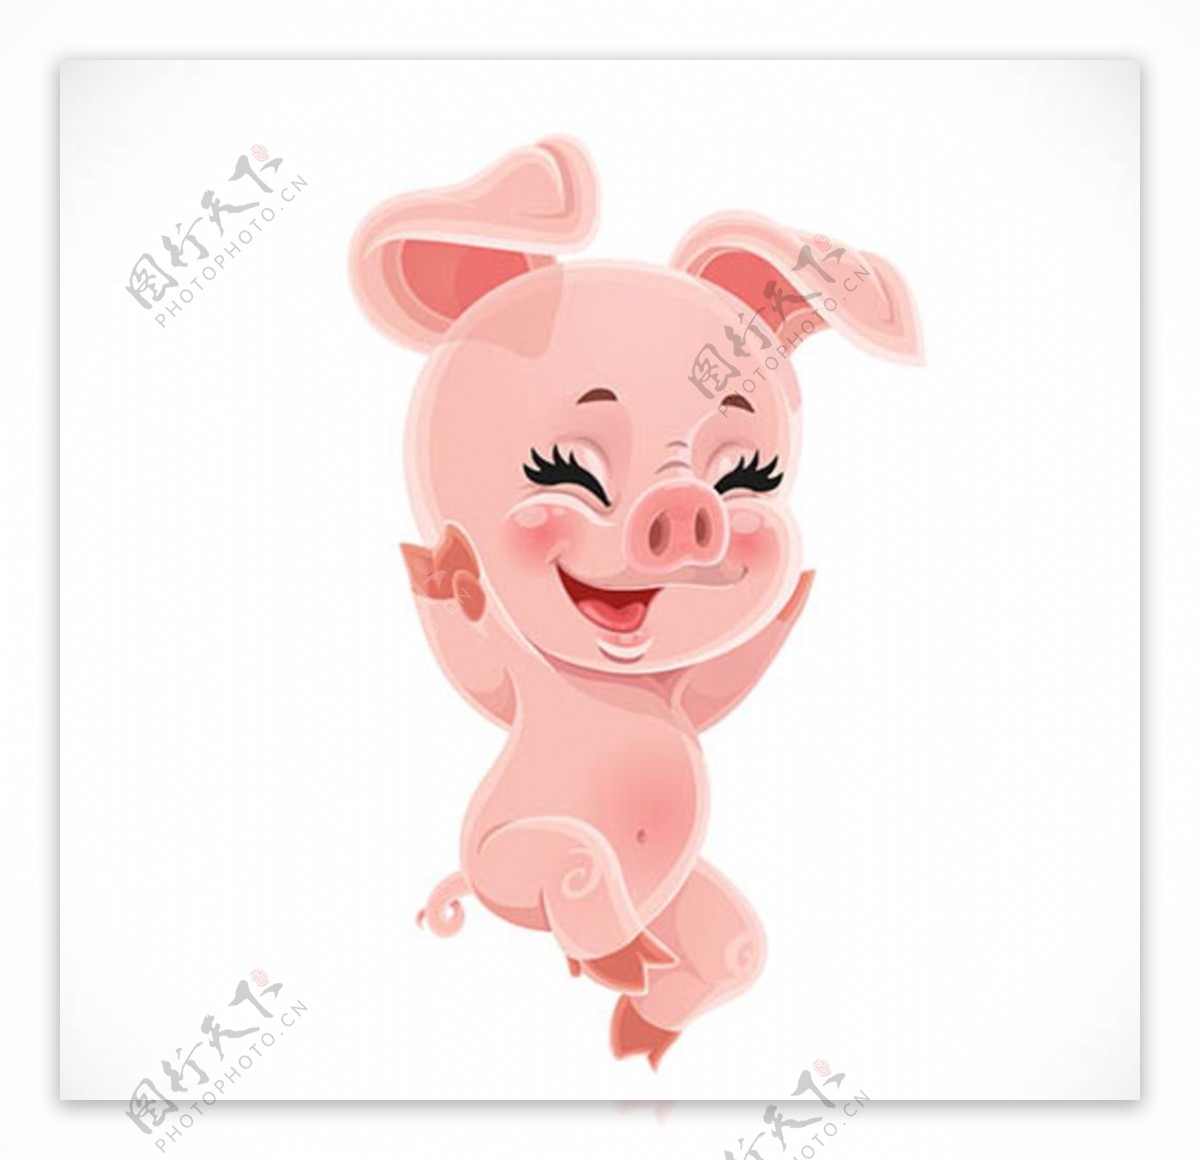 可爱的粉红猪卡通角色